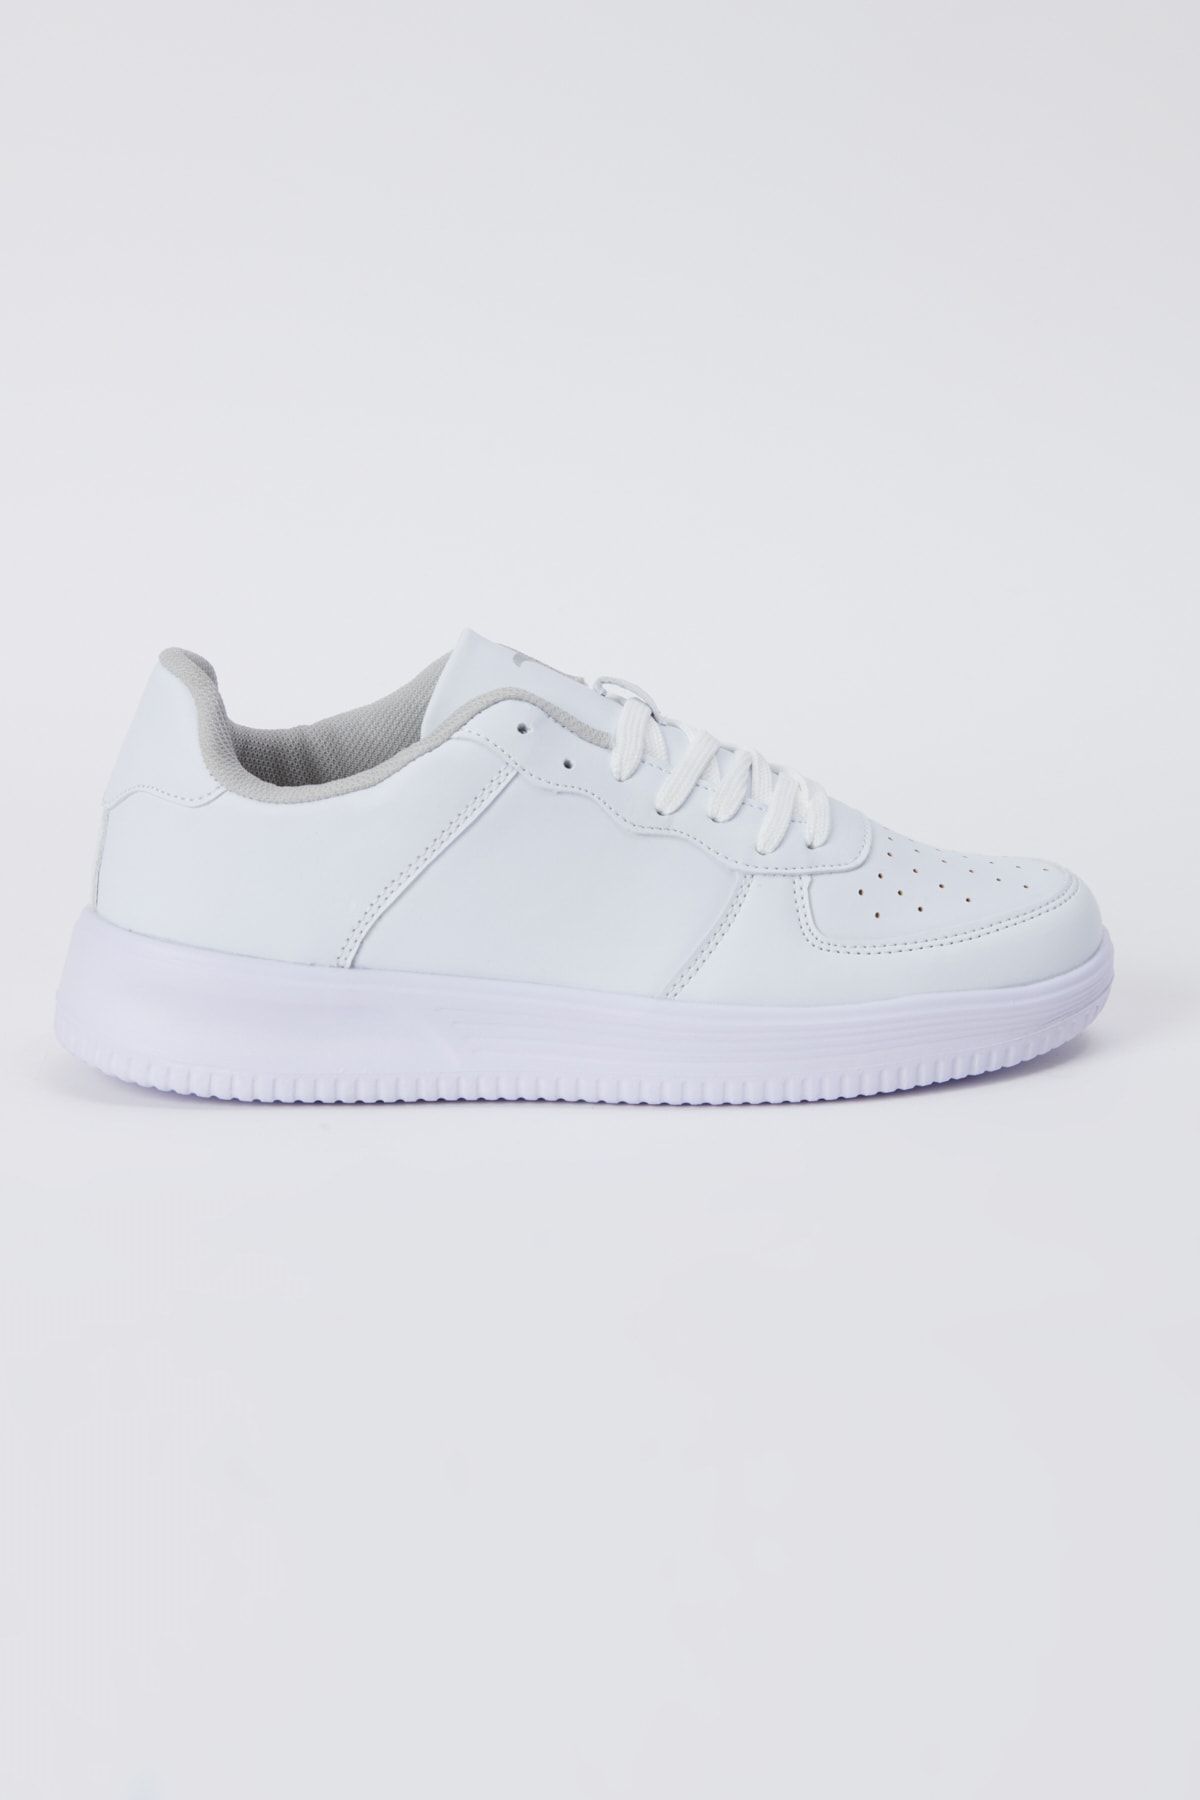 AC&Co / Altınyıldız Classics Men's White Laced Comfort Sole Casual Sneaker Shoes